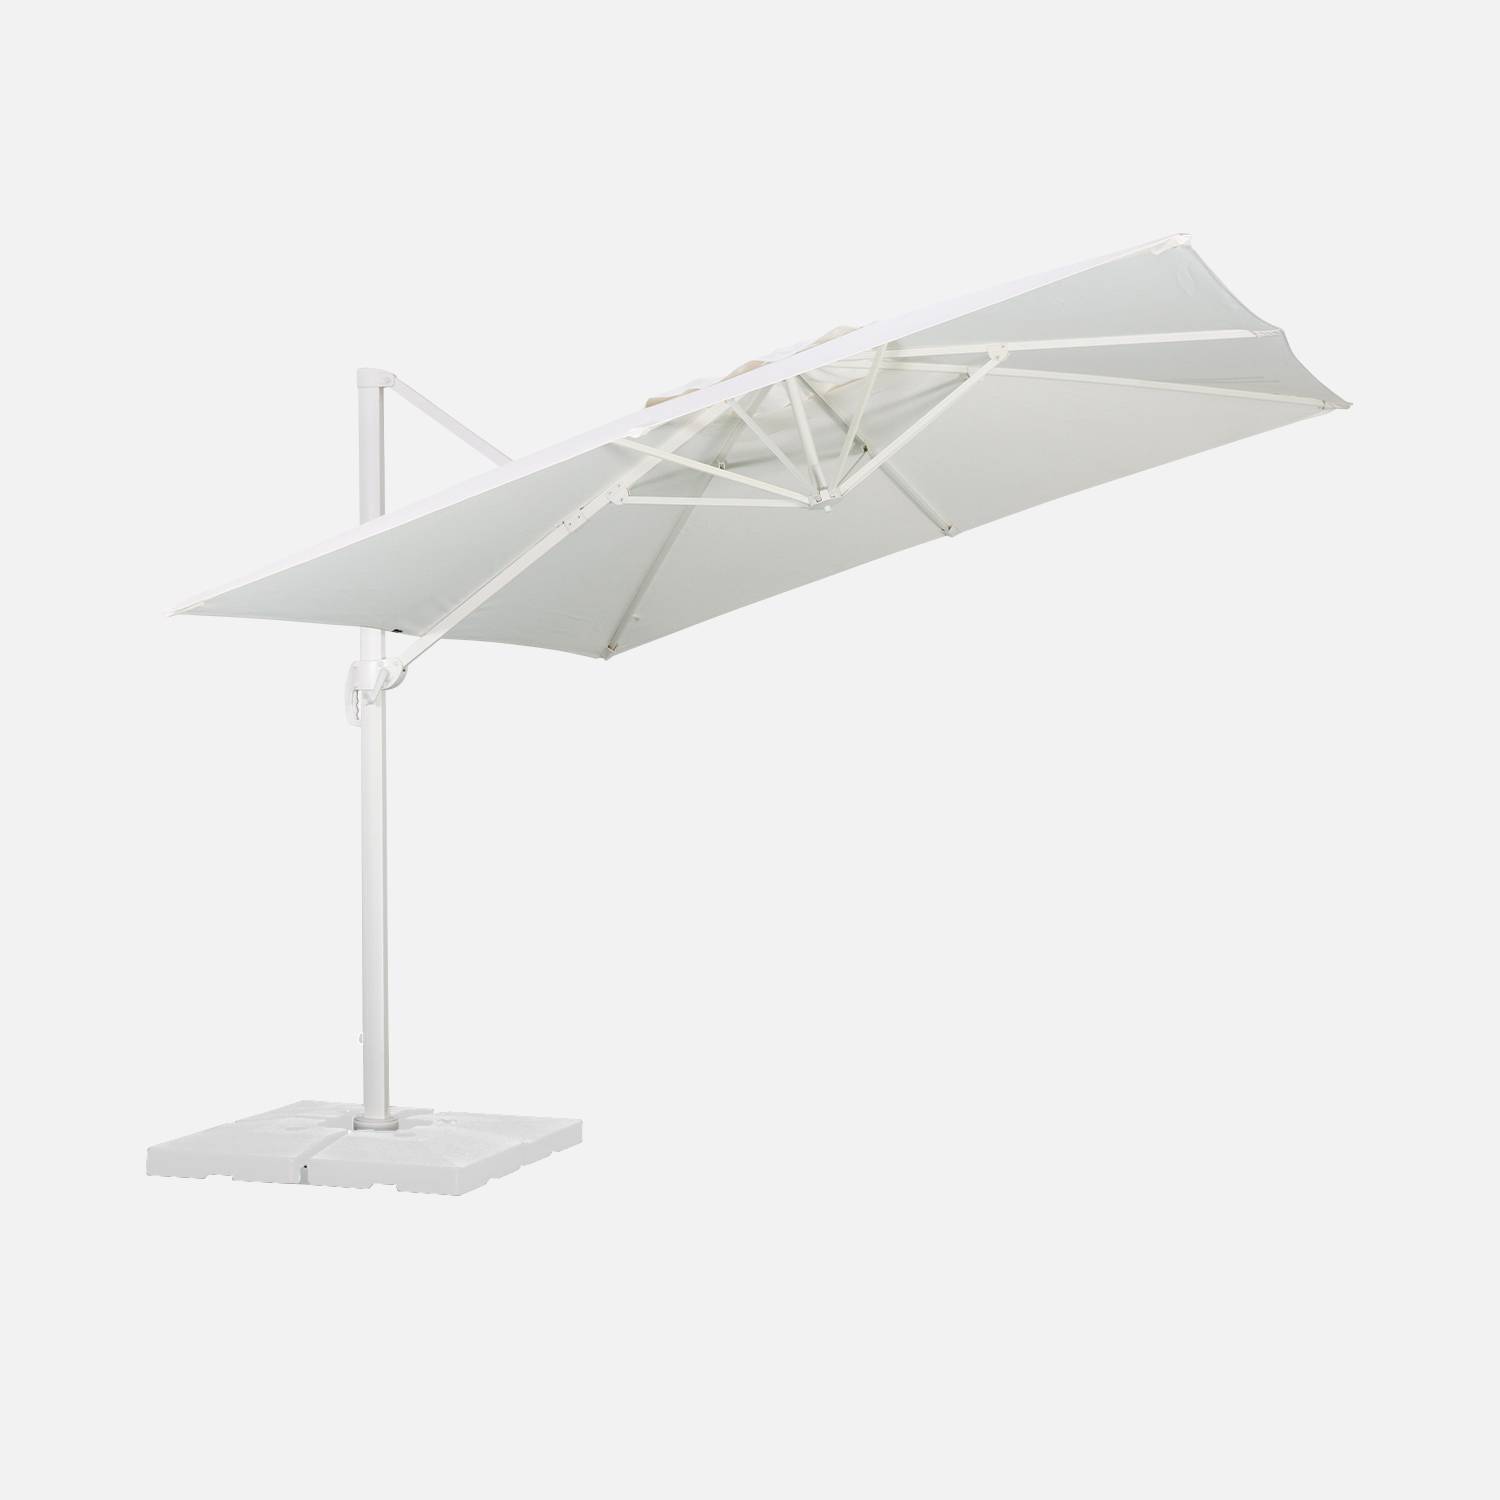 Hoogwaardige 3 x 3m vierkante parasol- Falgos - Wit - Kantelbare, opvouwbare en 360° draaibare zweefparasol Photo5